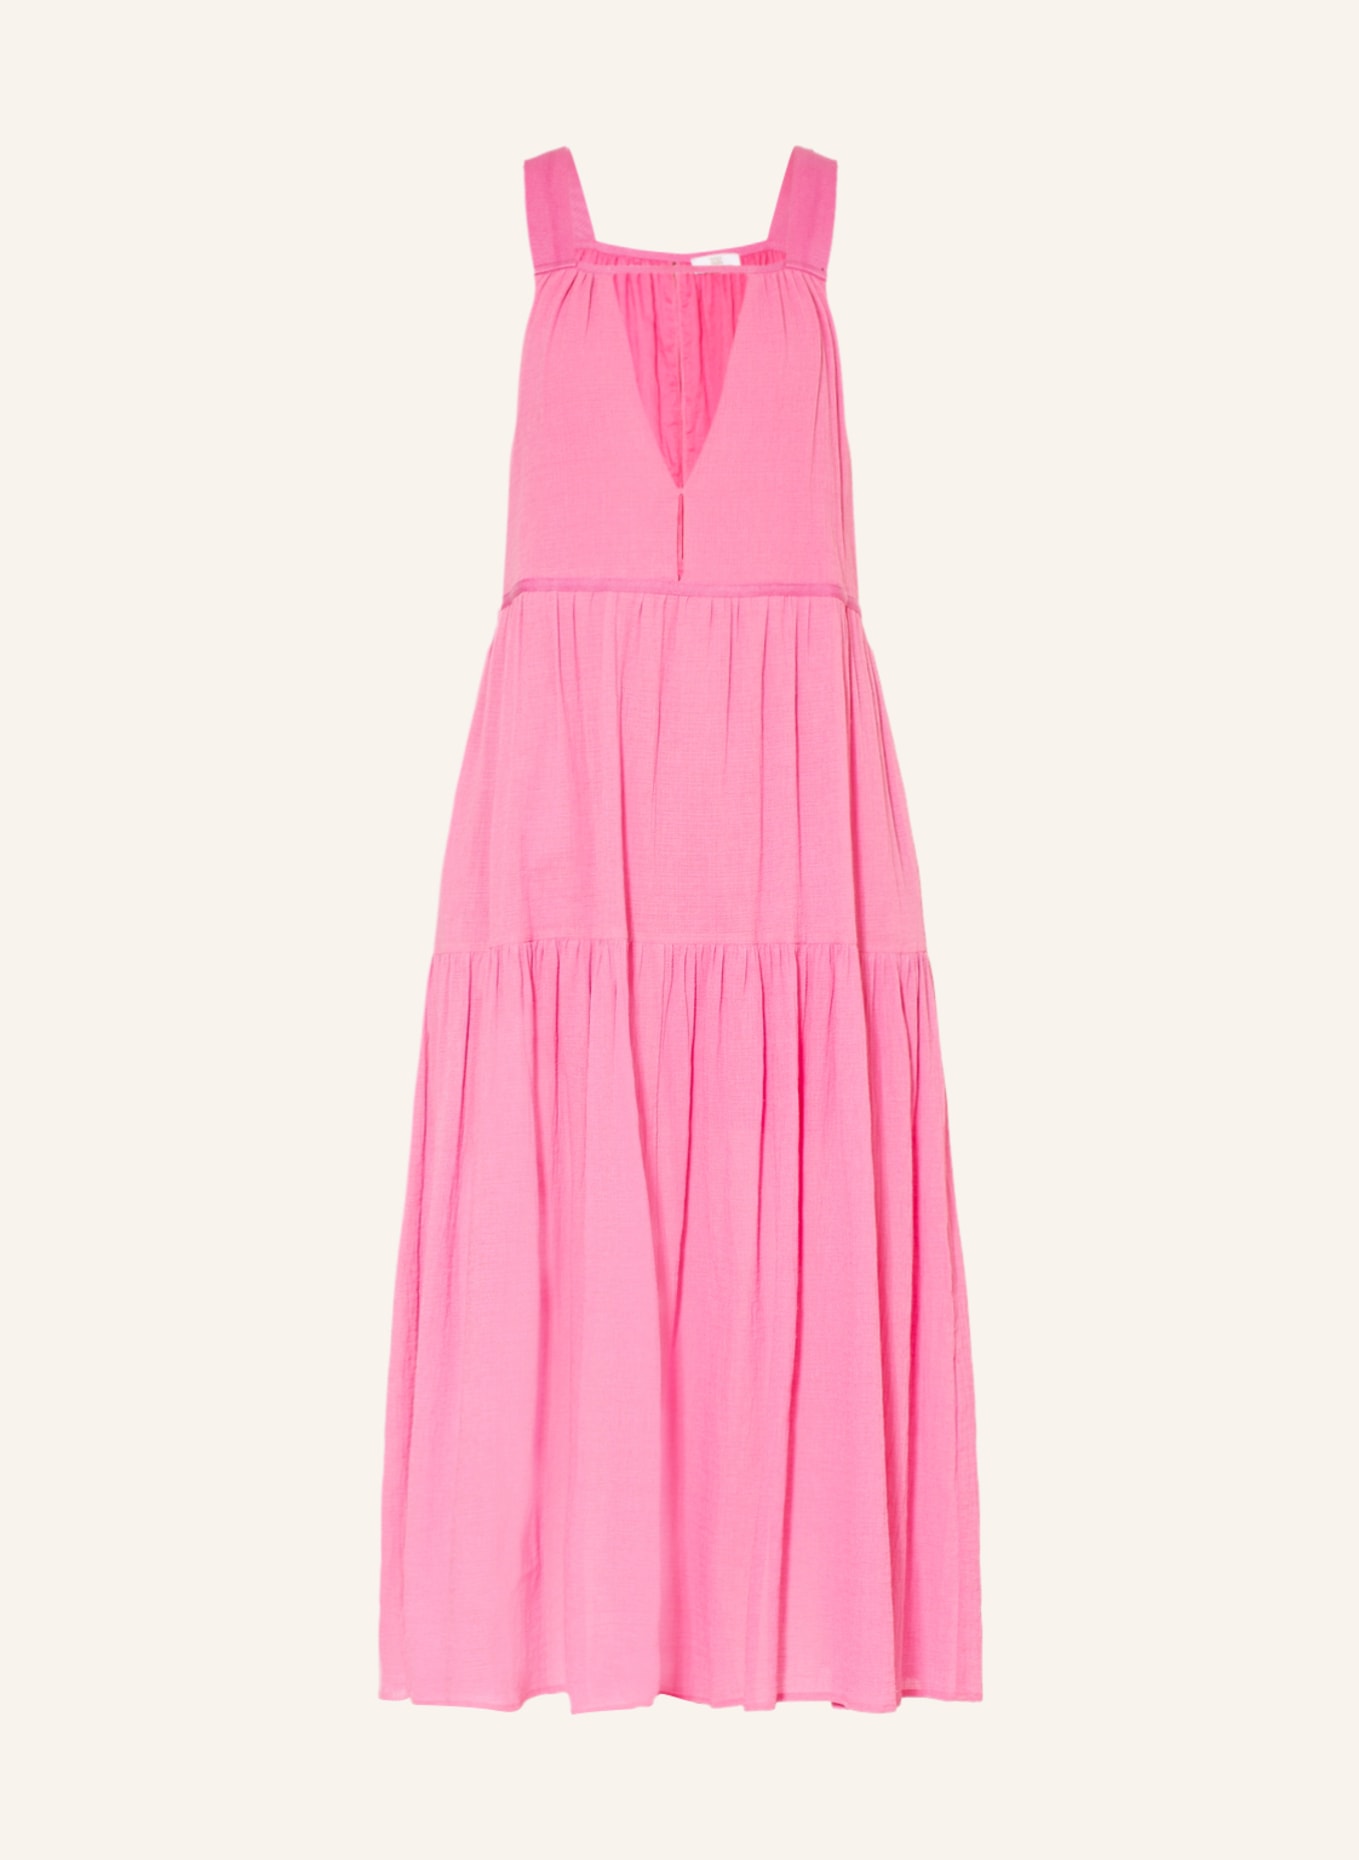 RIANI Kleid mit Cut-out, Farbe: PINK (Bild 1)